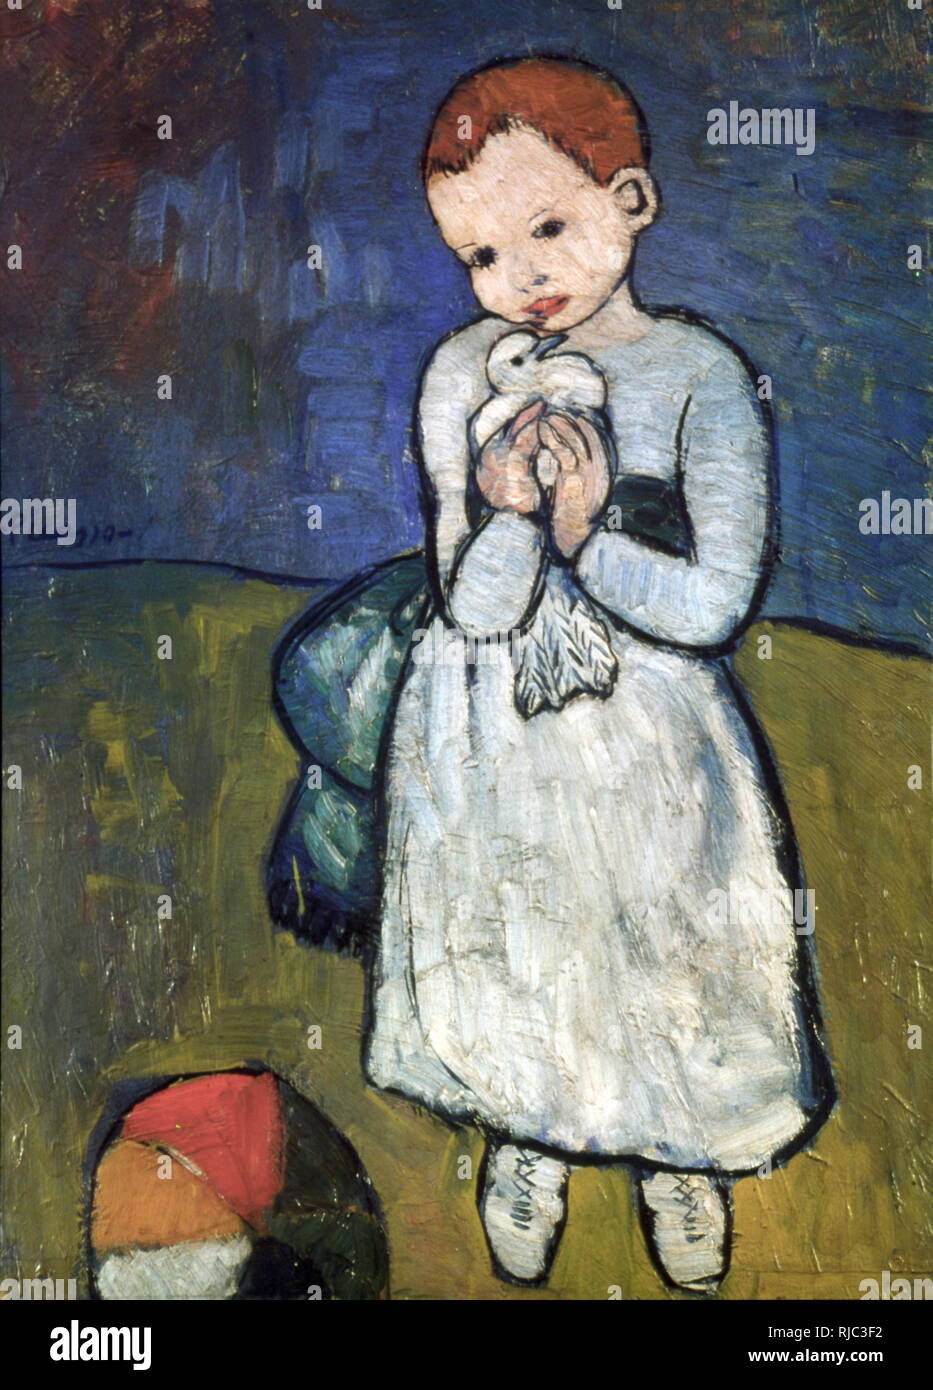 Enfant avec une colombe (L'enfant au pigeon) 1901 ; peinture par l'artiste espagnol Pablo Picasso, au début de sa période bleue. C'était sur l'affichage public en Angleterre pendant de nombreuses années avant sa vente en 2012 Banque D'Images